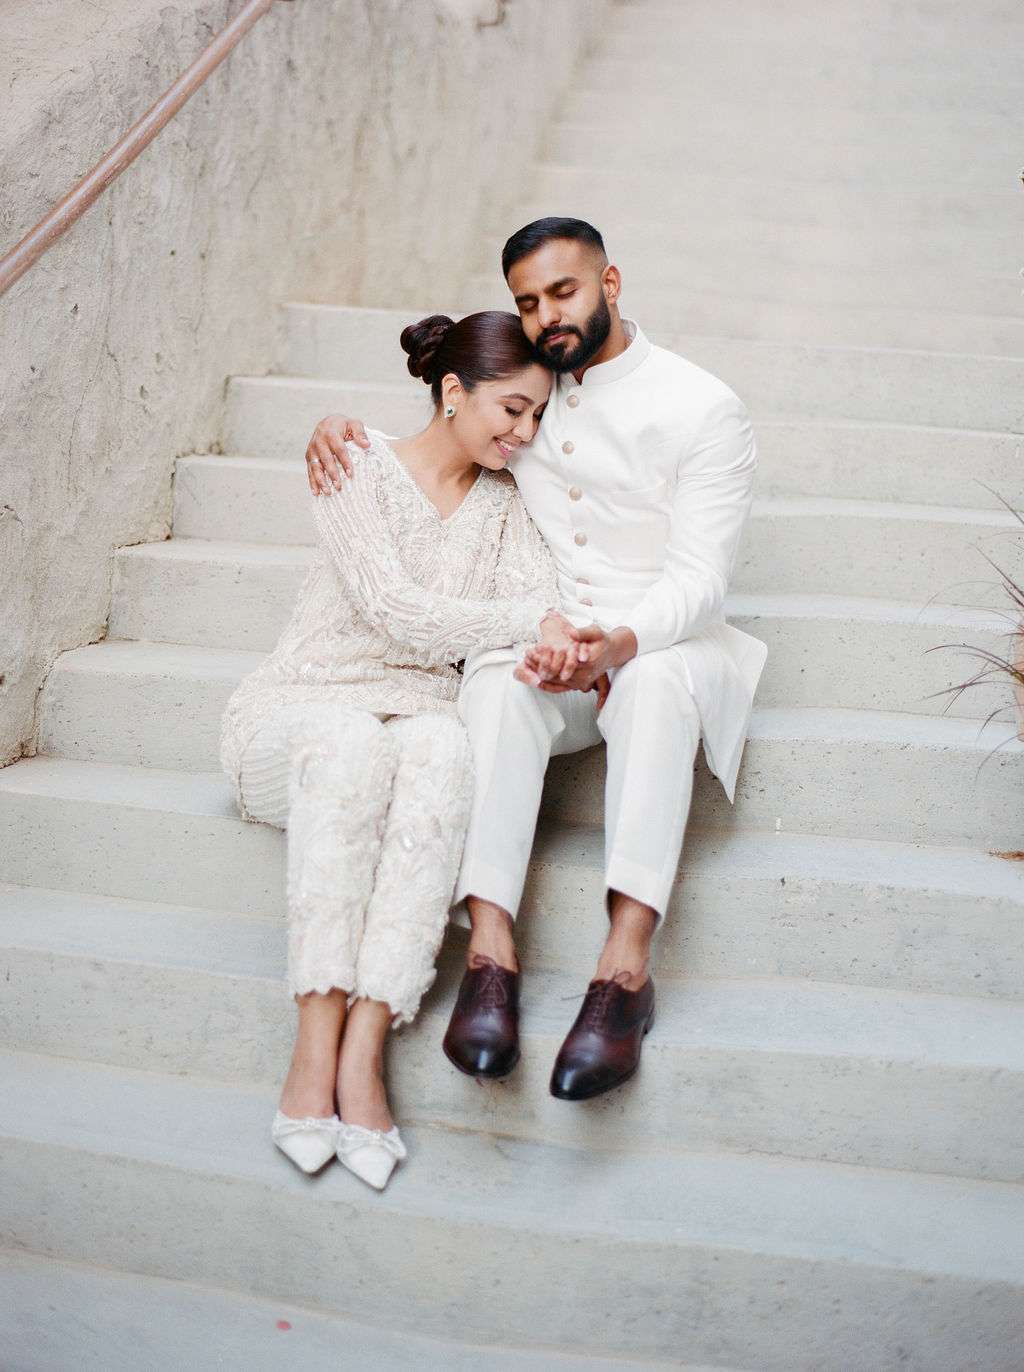 Pakistani groom photobombs wife in adorable wedding shoot